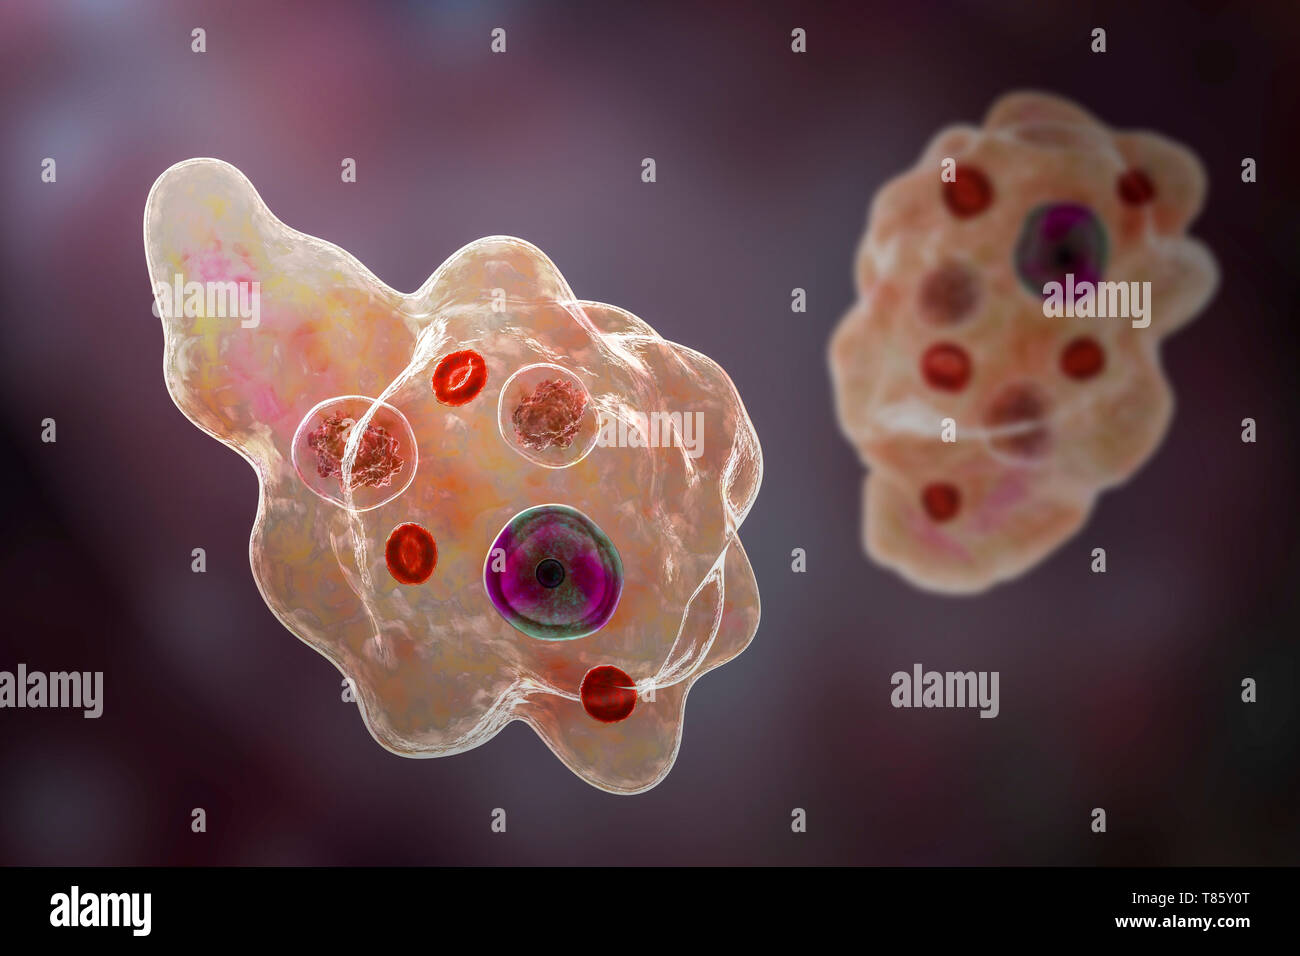 Parasitic amoeba, illustration Stock Photo